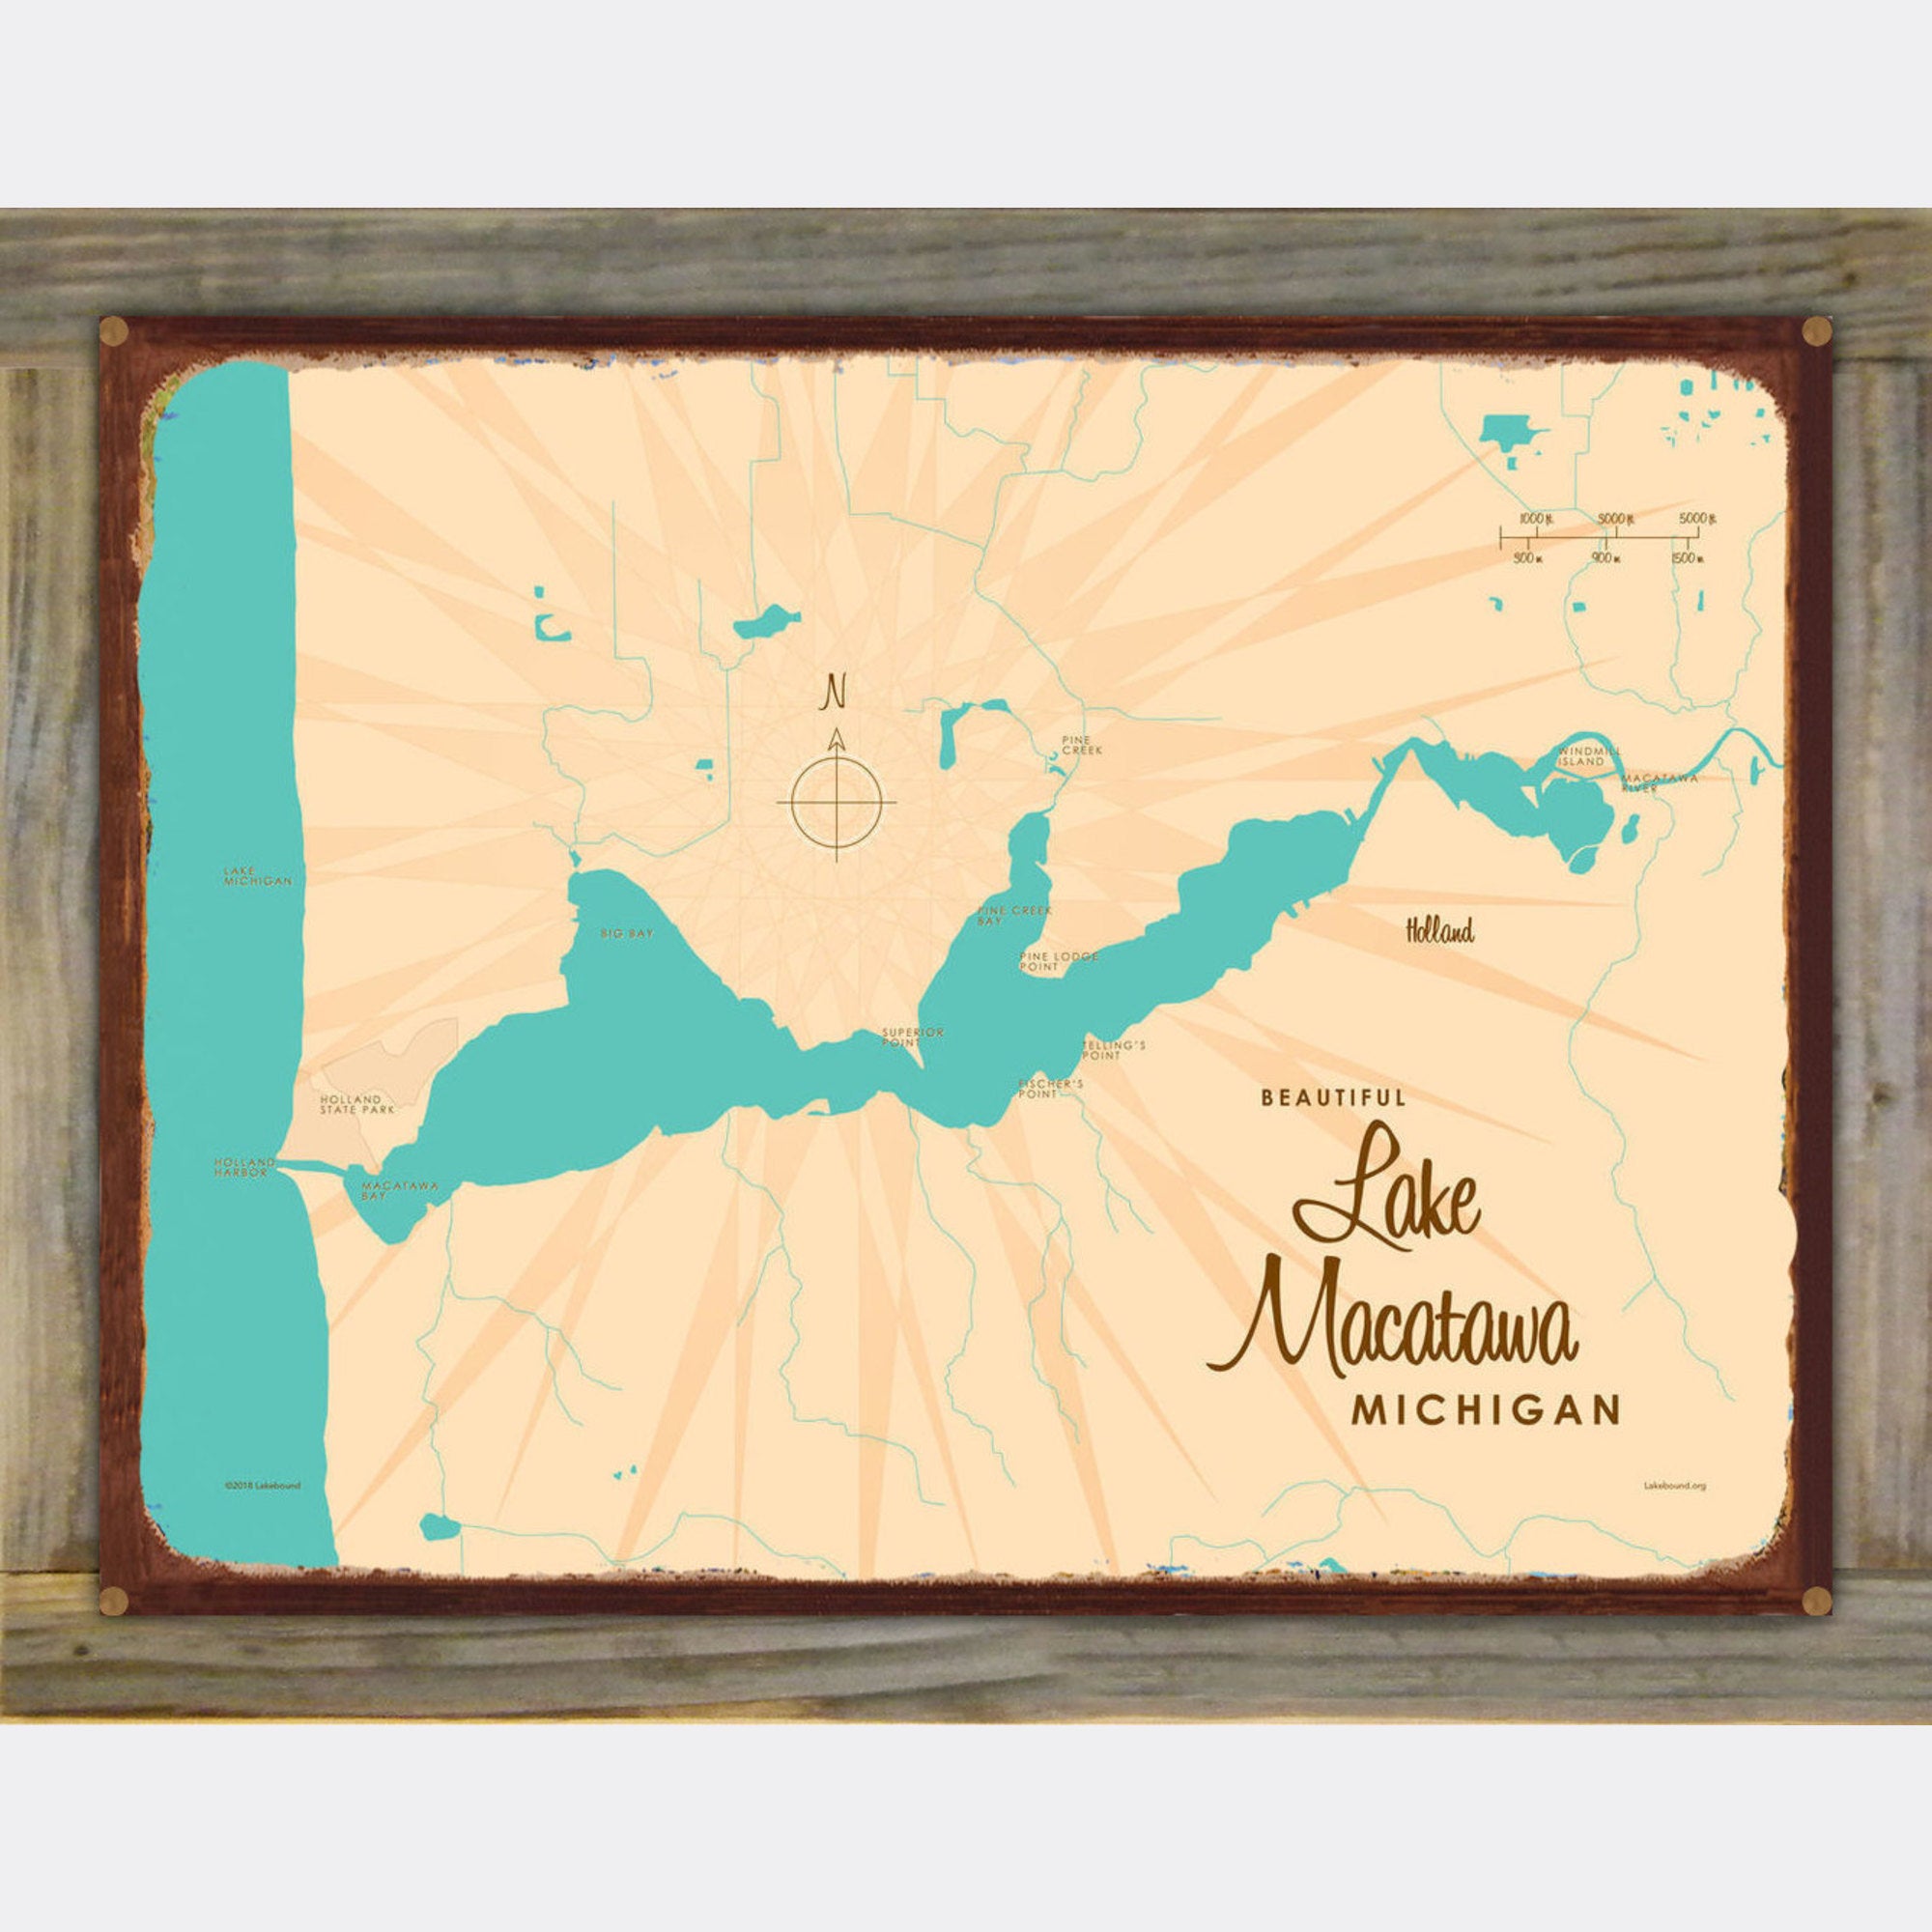 Lake Macatawa Michigan, Wood-Mounted Rustic Metal Sign Map Art